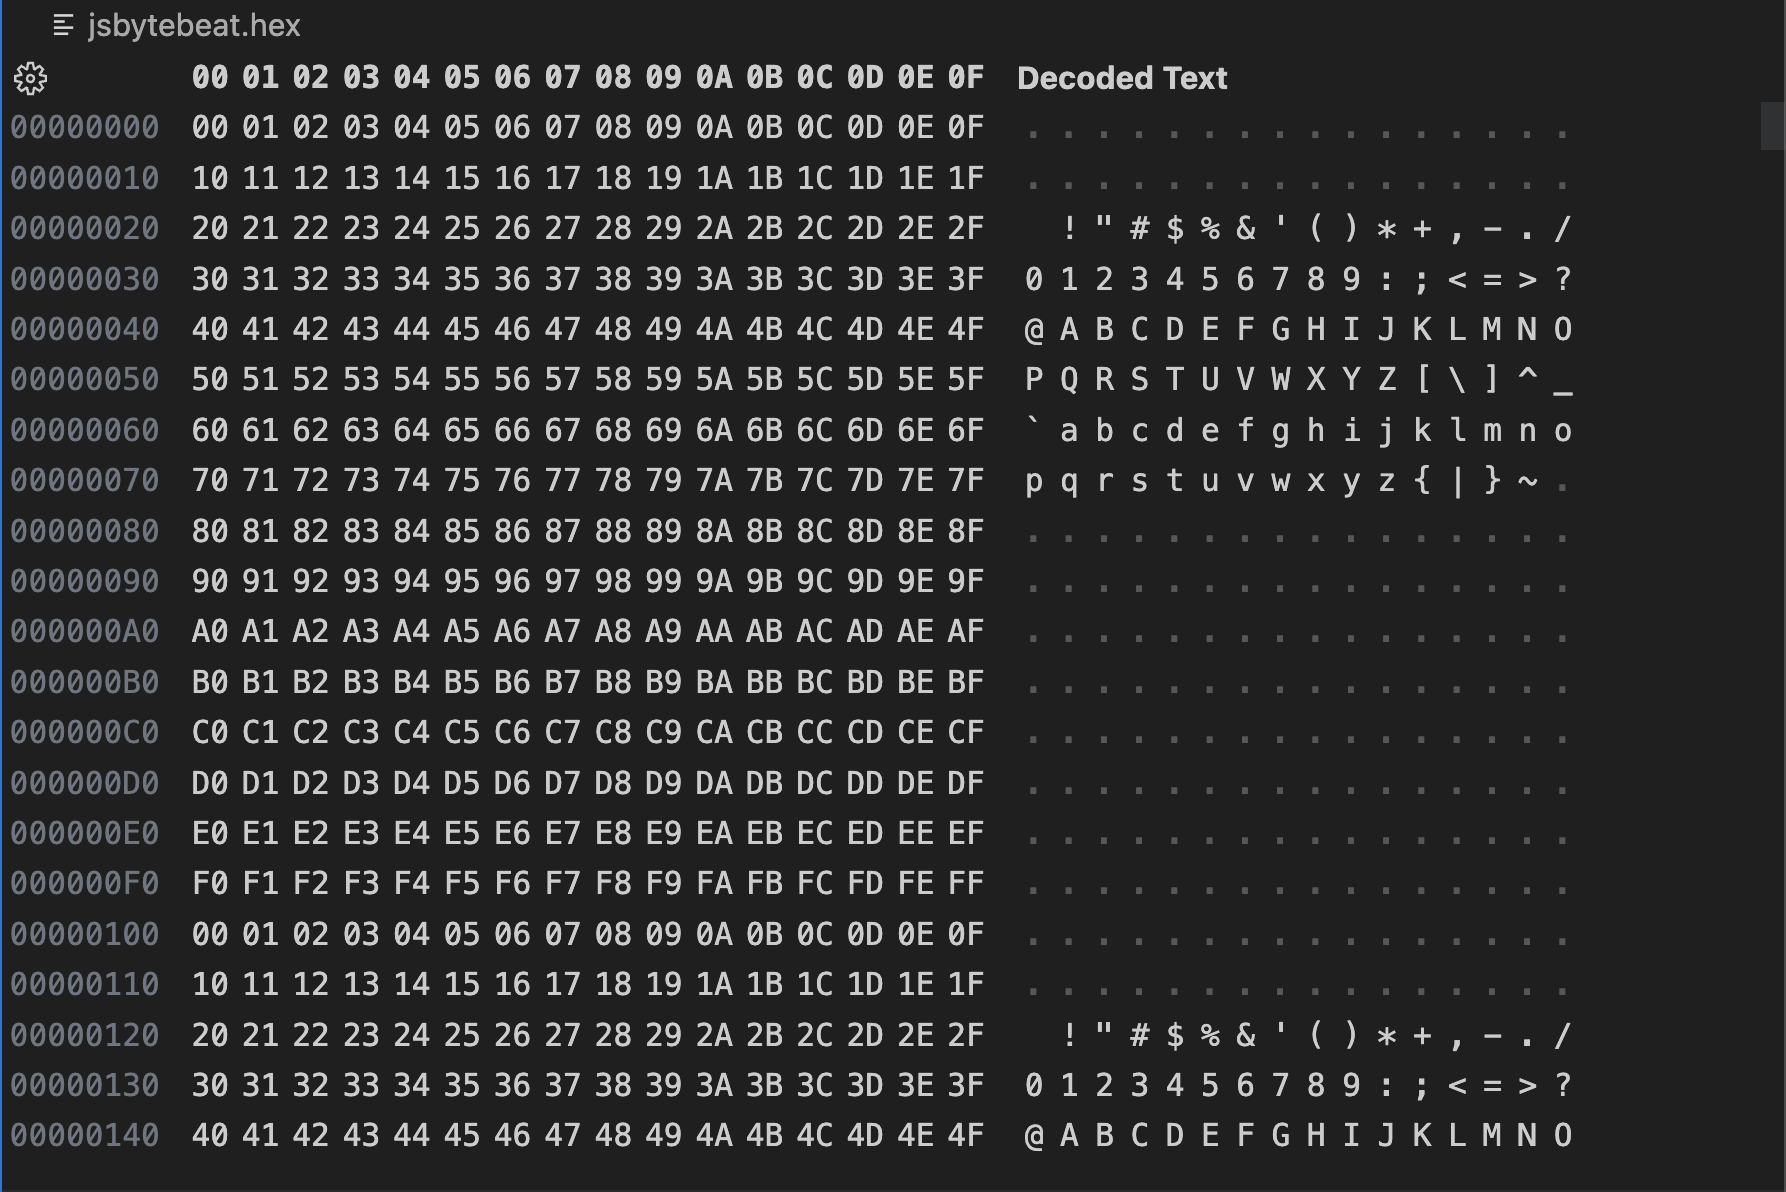 バイナリエディタで0~255までが連続するバイナリデータを表示したVisual Studio Codeのスクリーンショット。